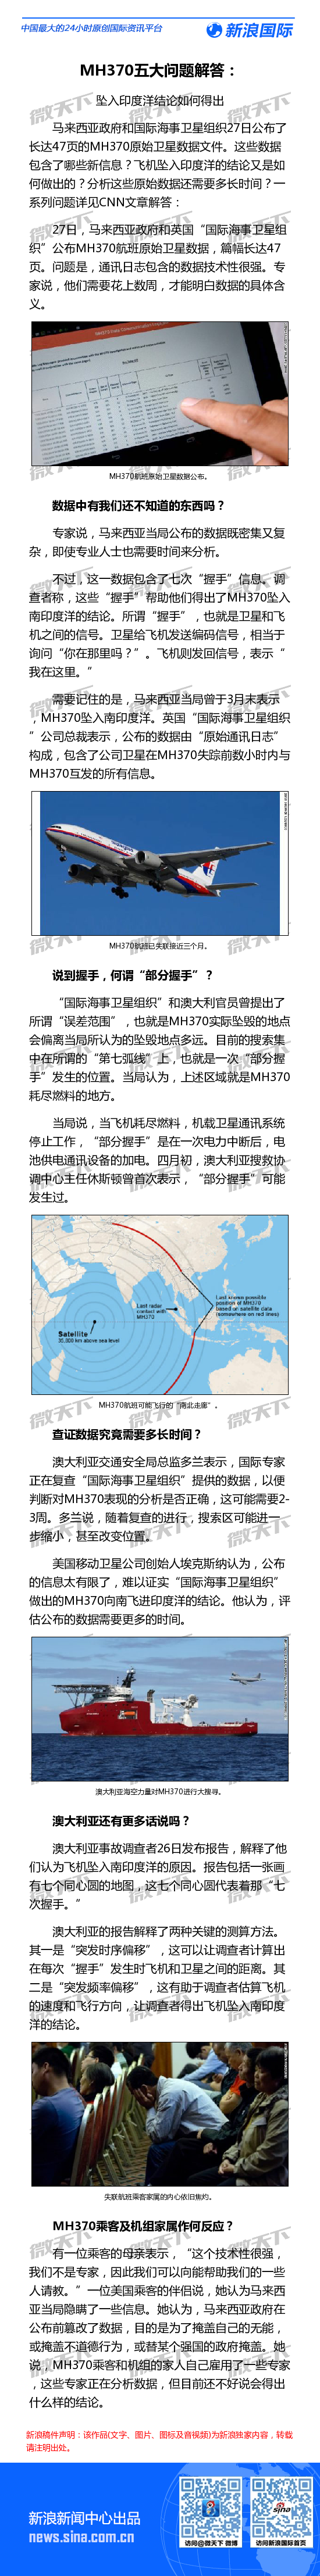 mh370五大问题解答：坠入印度洋结论如何得出